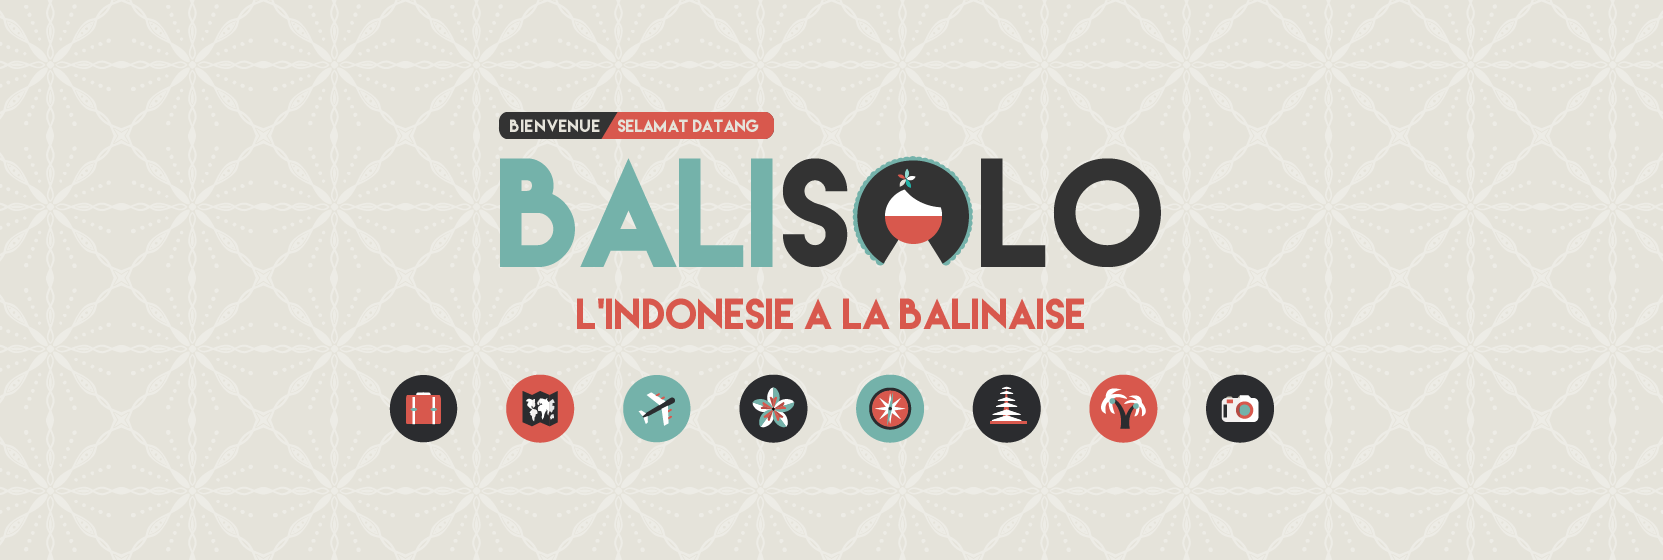 (c) Balisolo.com